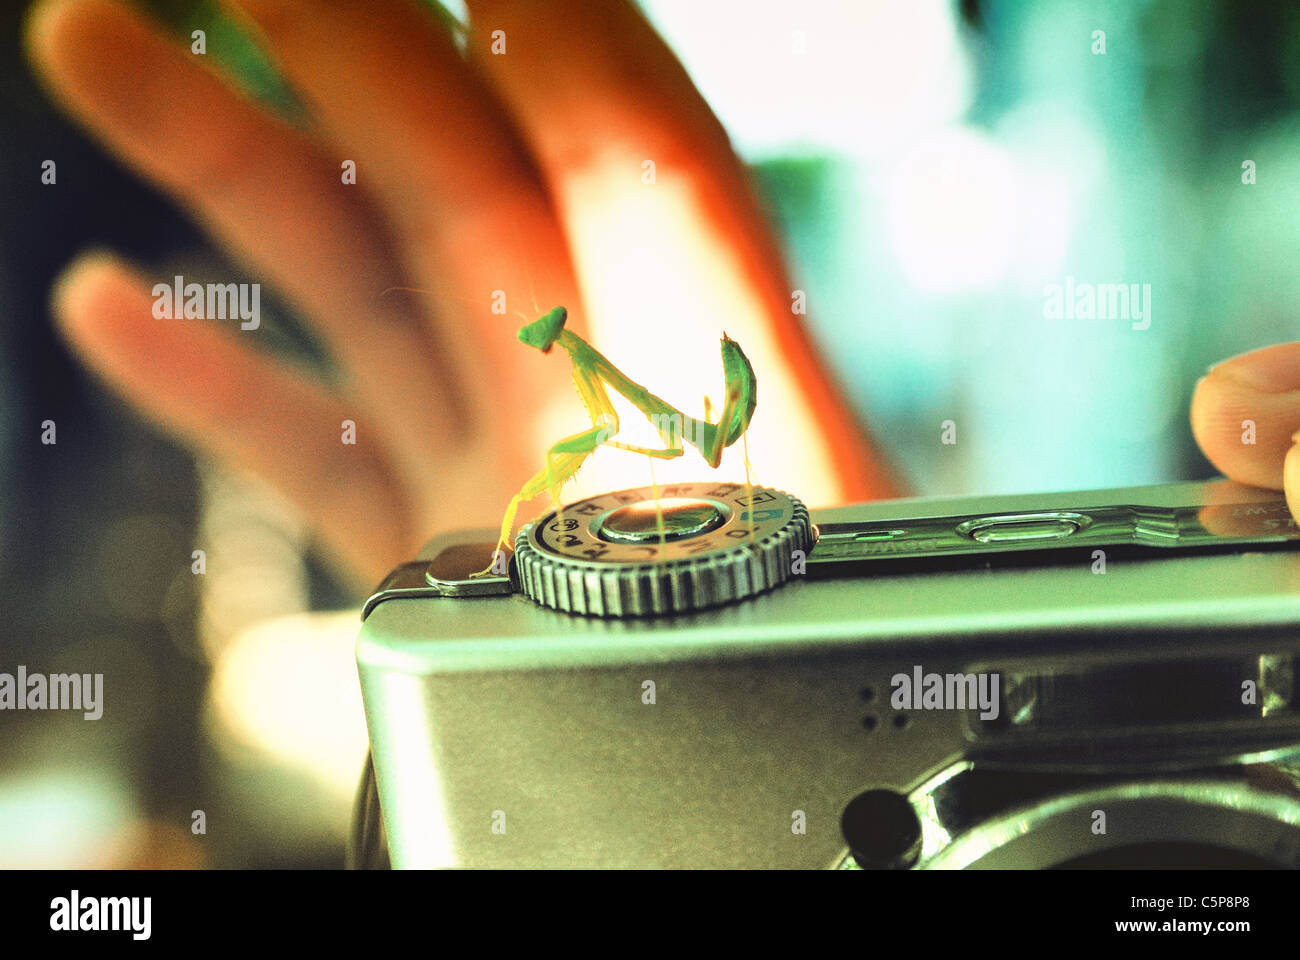 Un mantis est perché sur un appareil photo numérique Banque D'Images